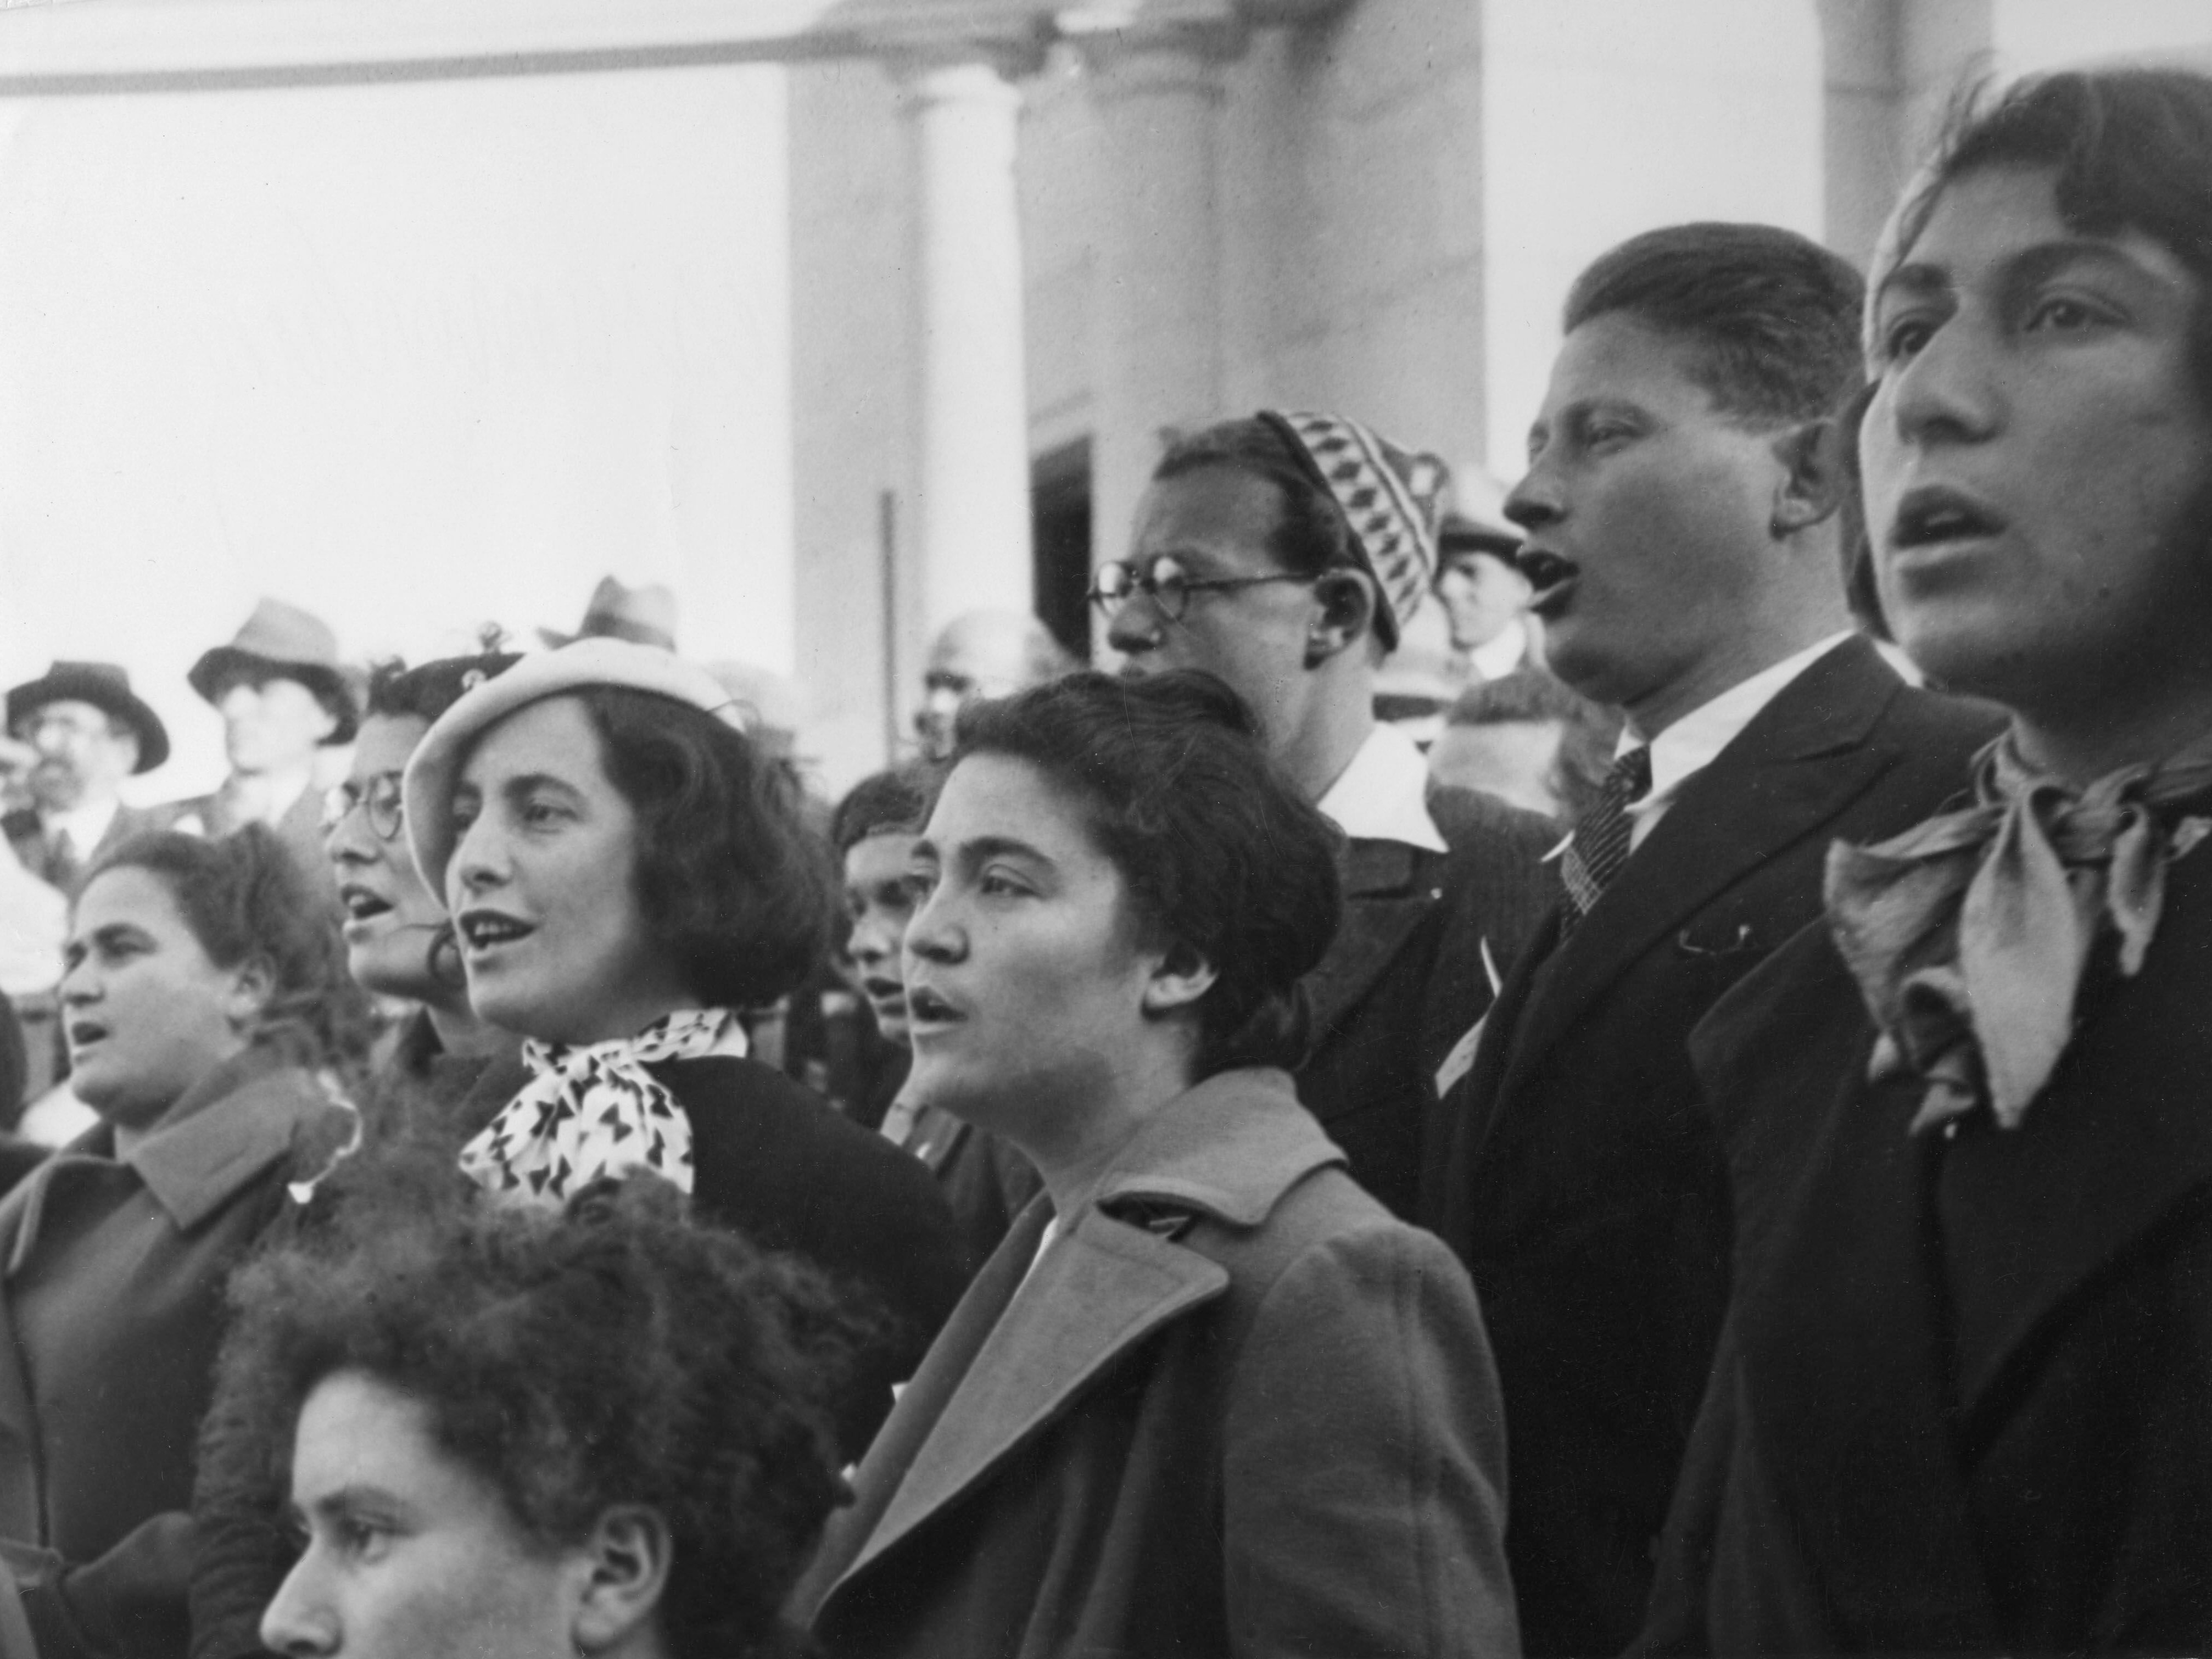 Palästina als britisches Mandat 1922–48: Jüdische Einwanderung. Singen der HaTikwah (= die Hoffnung; später Nationalhymne Israels) auf einer Versammlung jüdischer Einwanderer. Foto, um 1935.